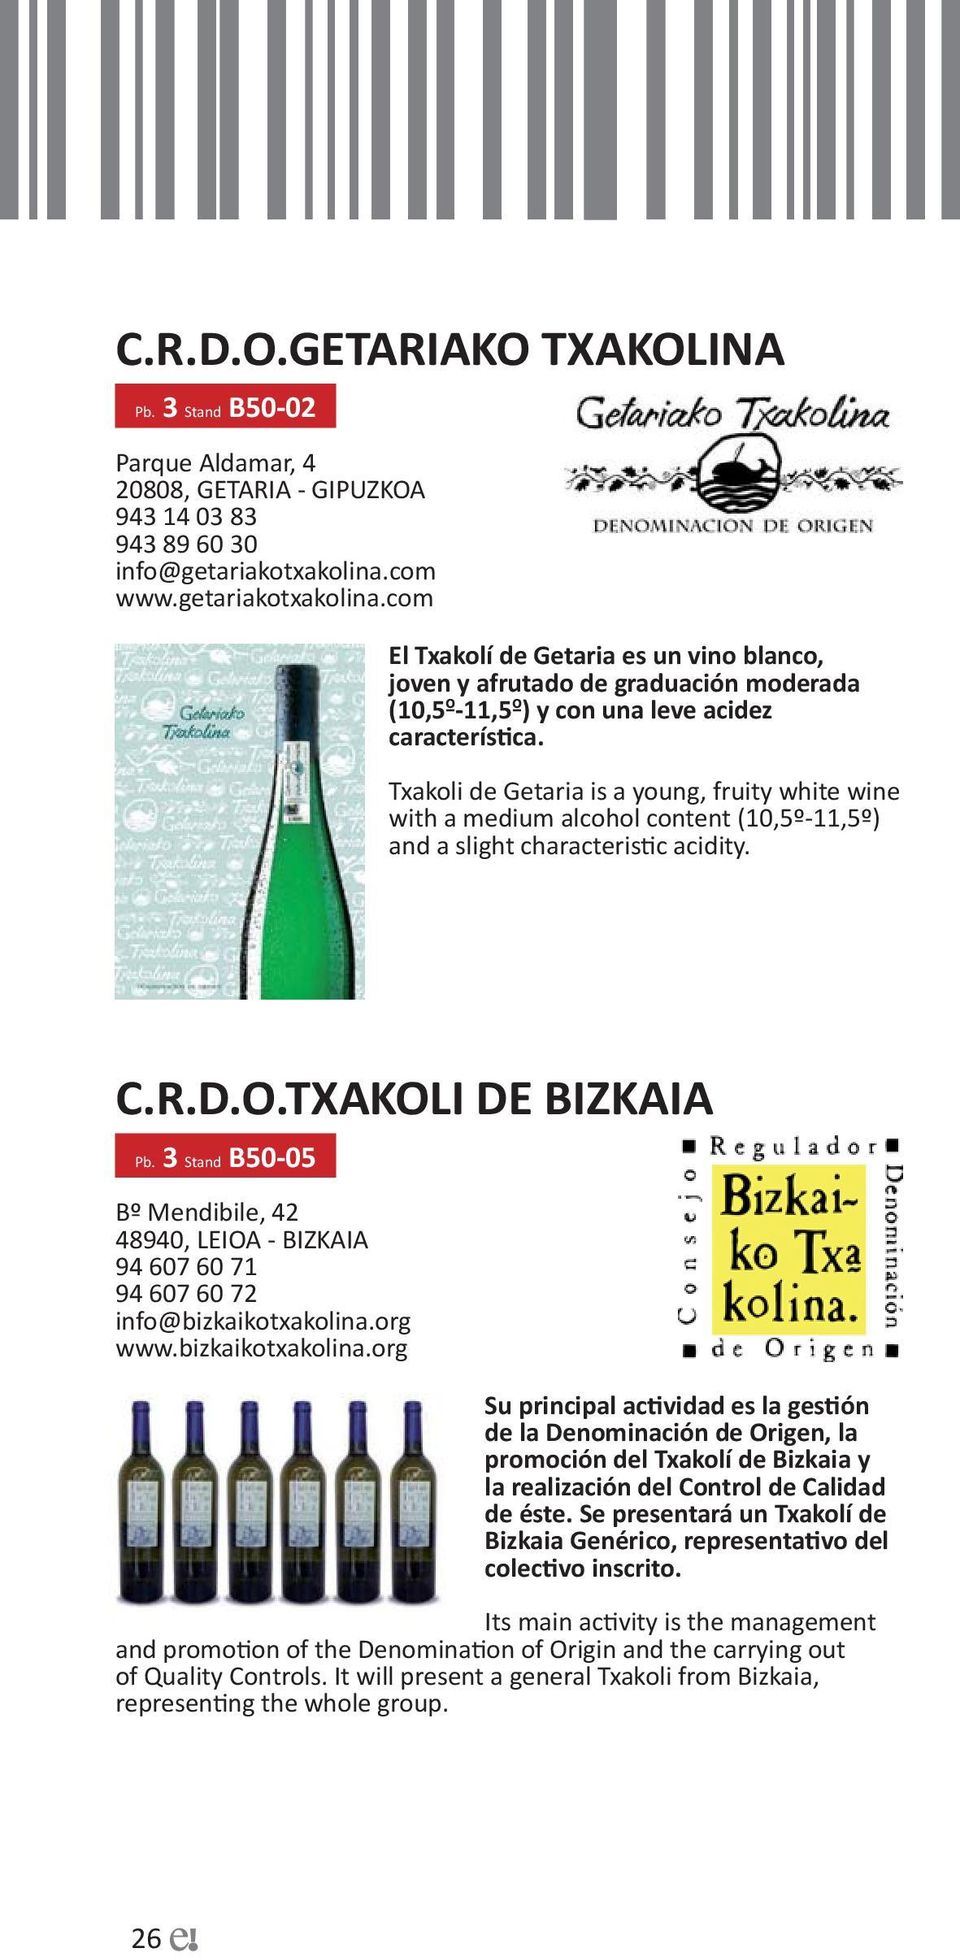 Txakoli de Getaria is a young, fruity white wine with a medium alcohol content (10,5º-11,5º) and a slight characteristic acidity. C.R.D.O.TXAKOLI DE BIZKAIA Pb.